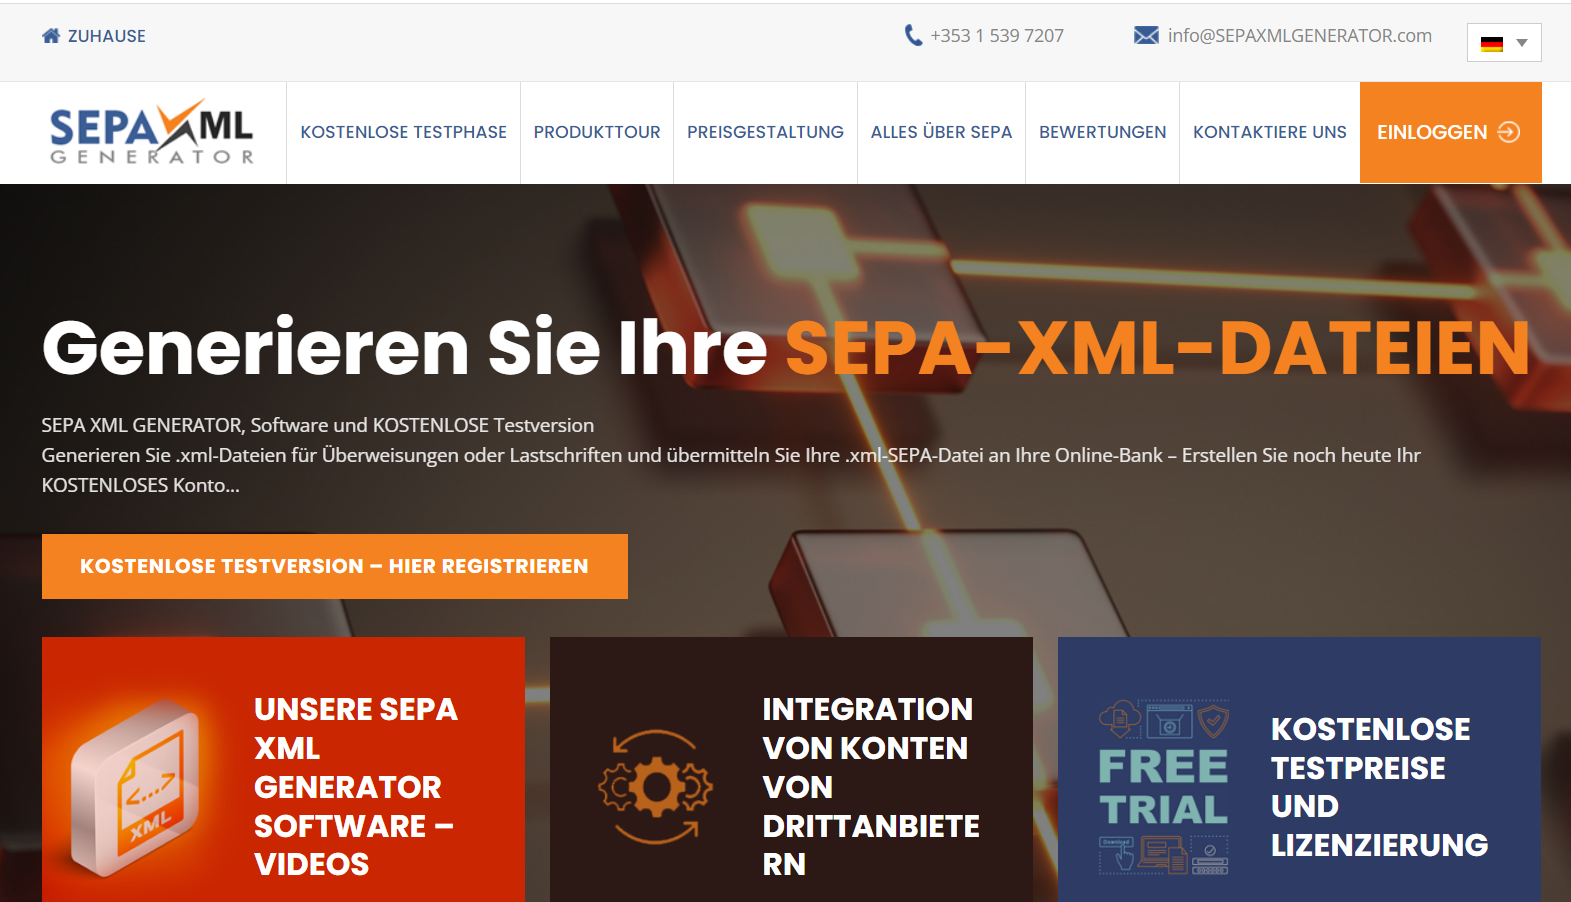 SEPA XML GENERATOR teraz w języku niemieckim